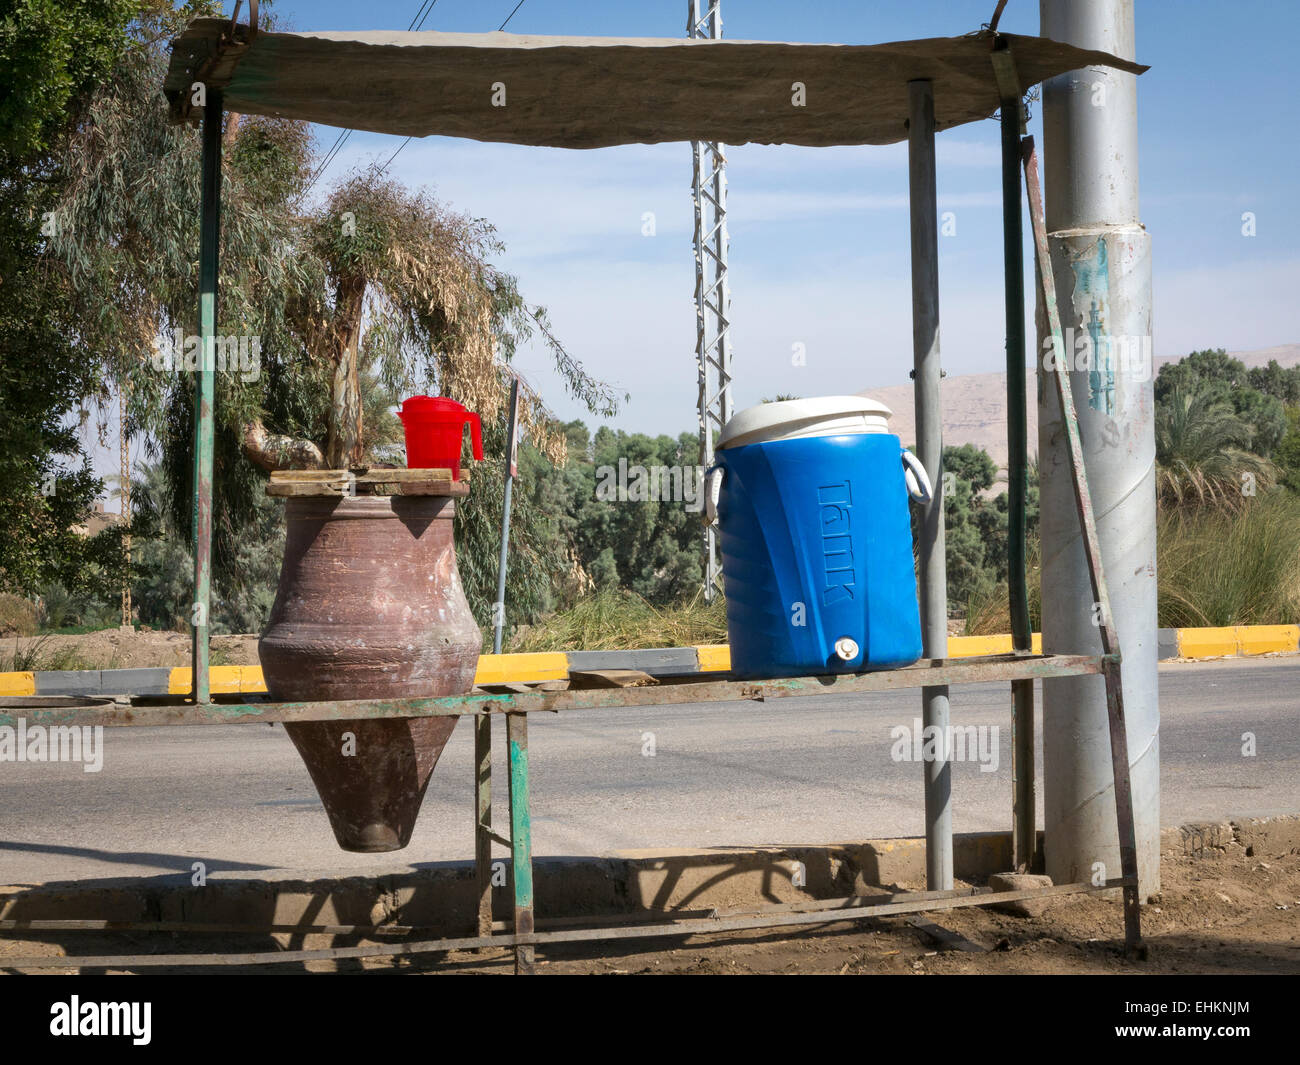 1 et 1 de la poterie en plastique bleu de l'eau potable publique transporteurs sur la route, sous un auvent ombragé Afrique Egypte Banque D'Images